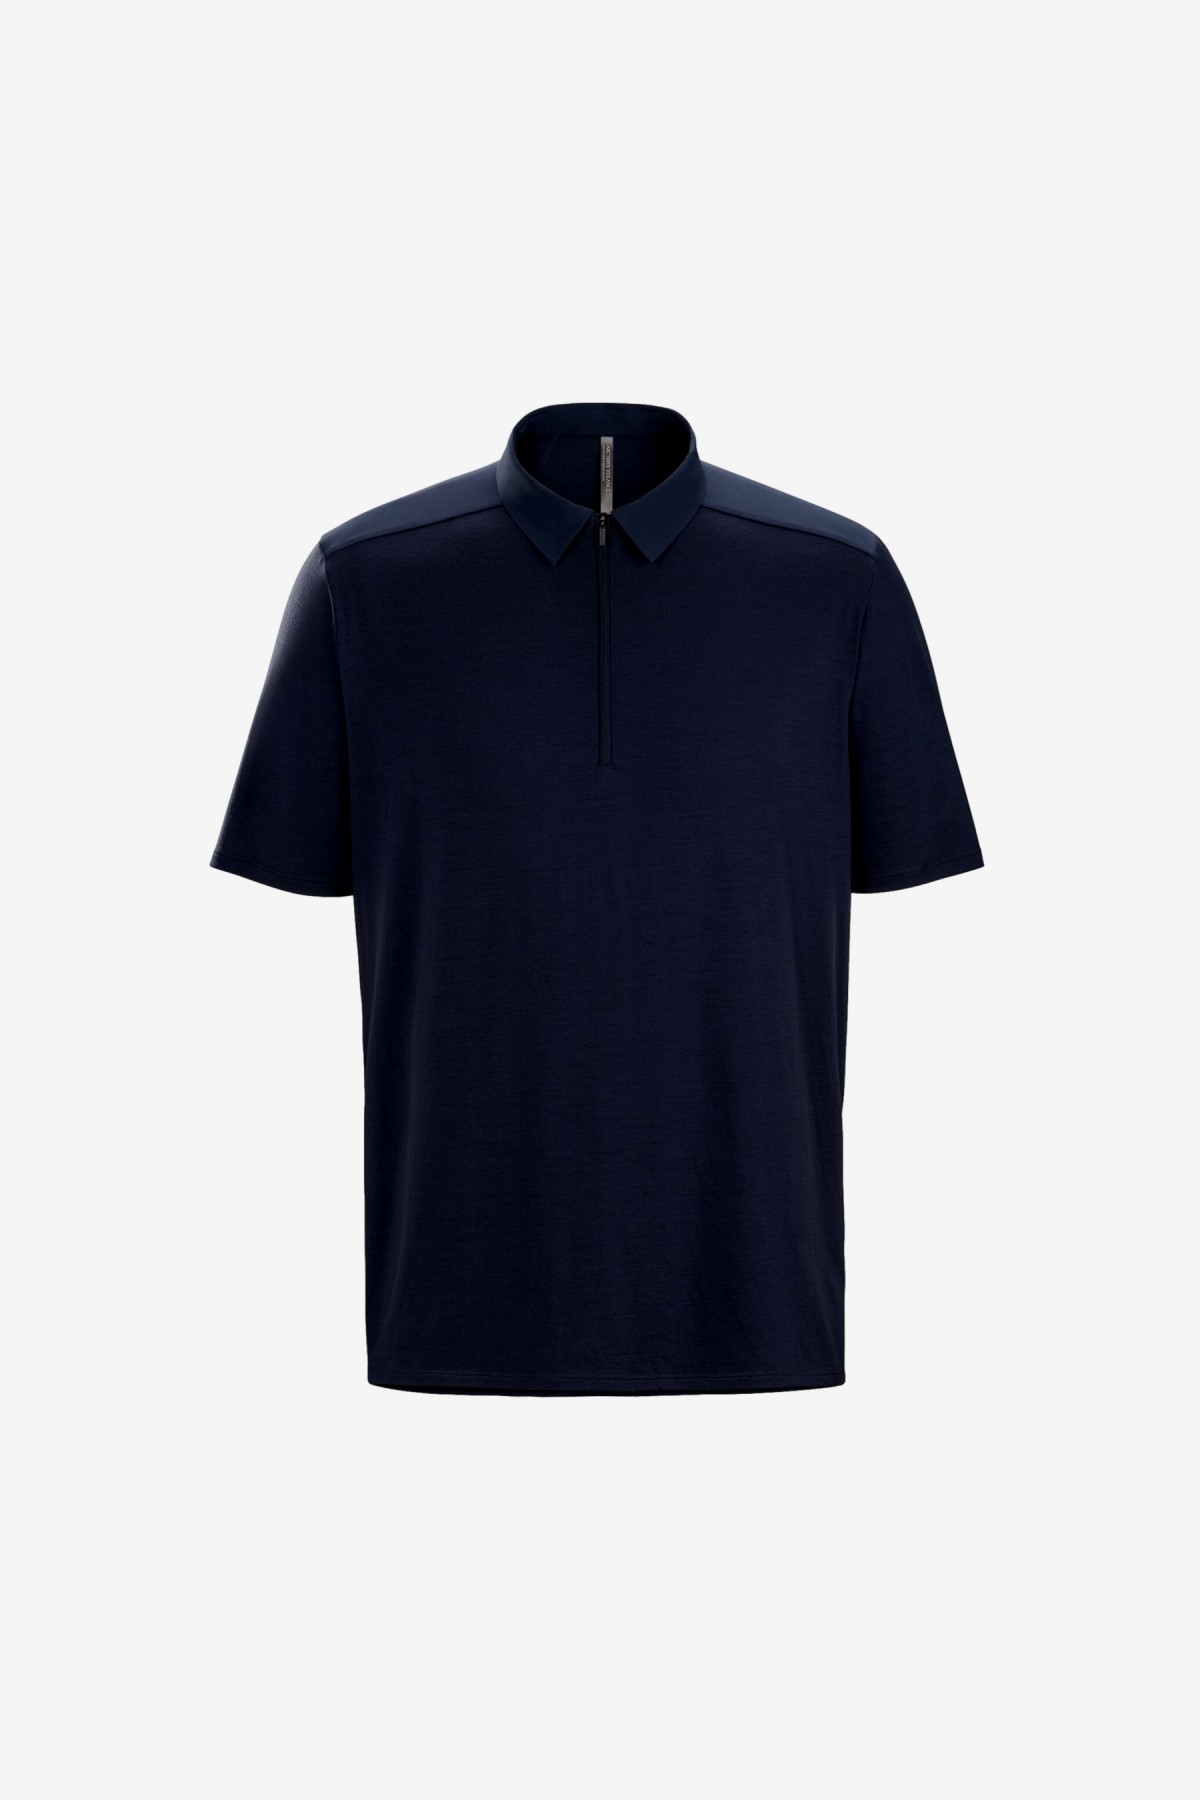 Arc'teryx Veillance Frame SS Polo Shirt in Navy Blue